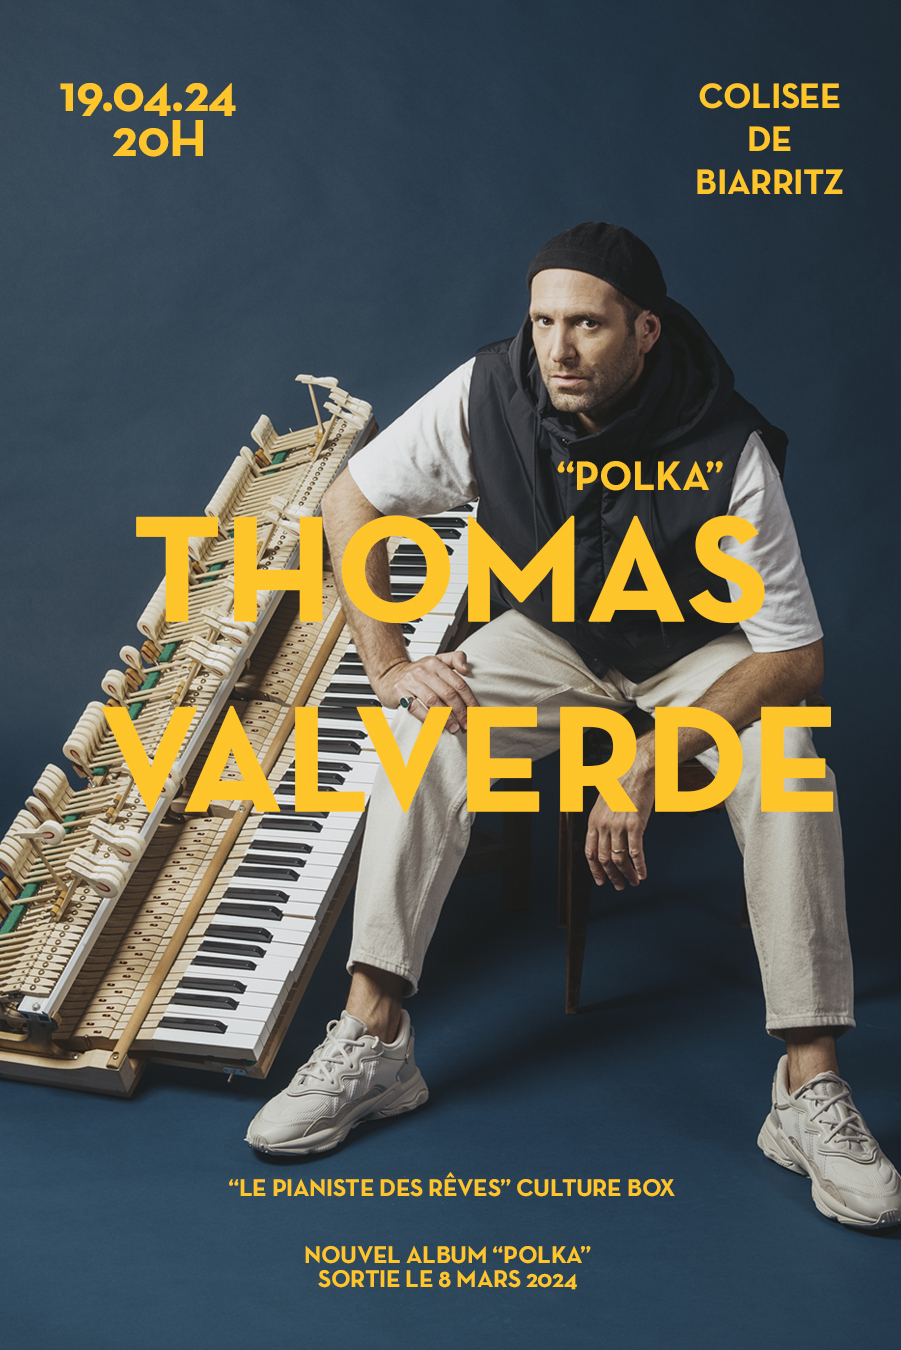 Thomas Valverde Polka